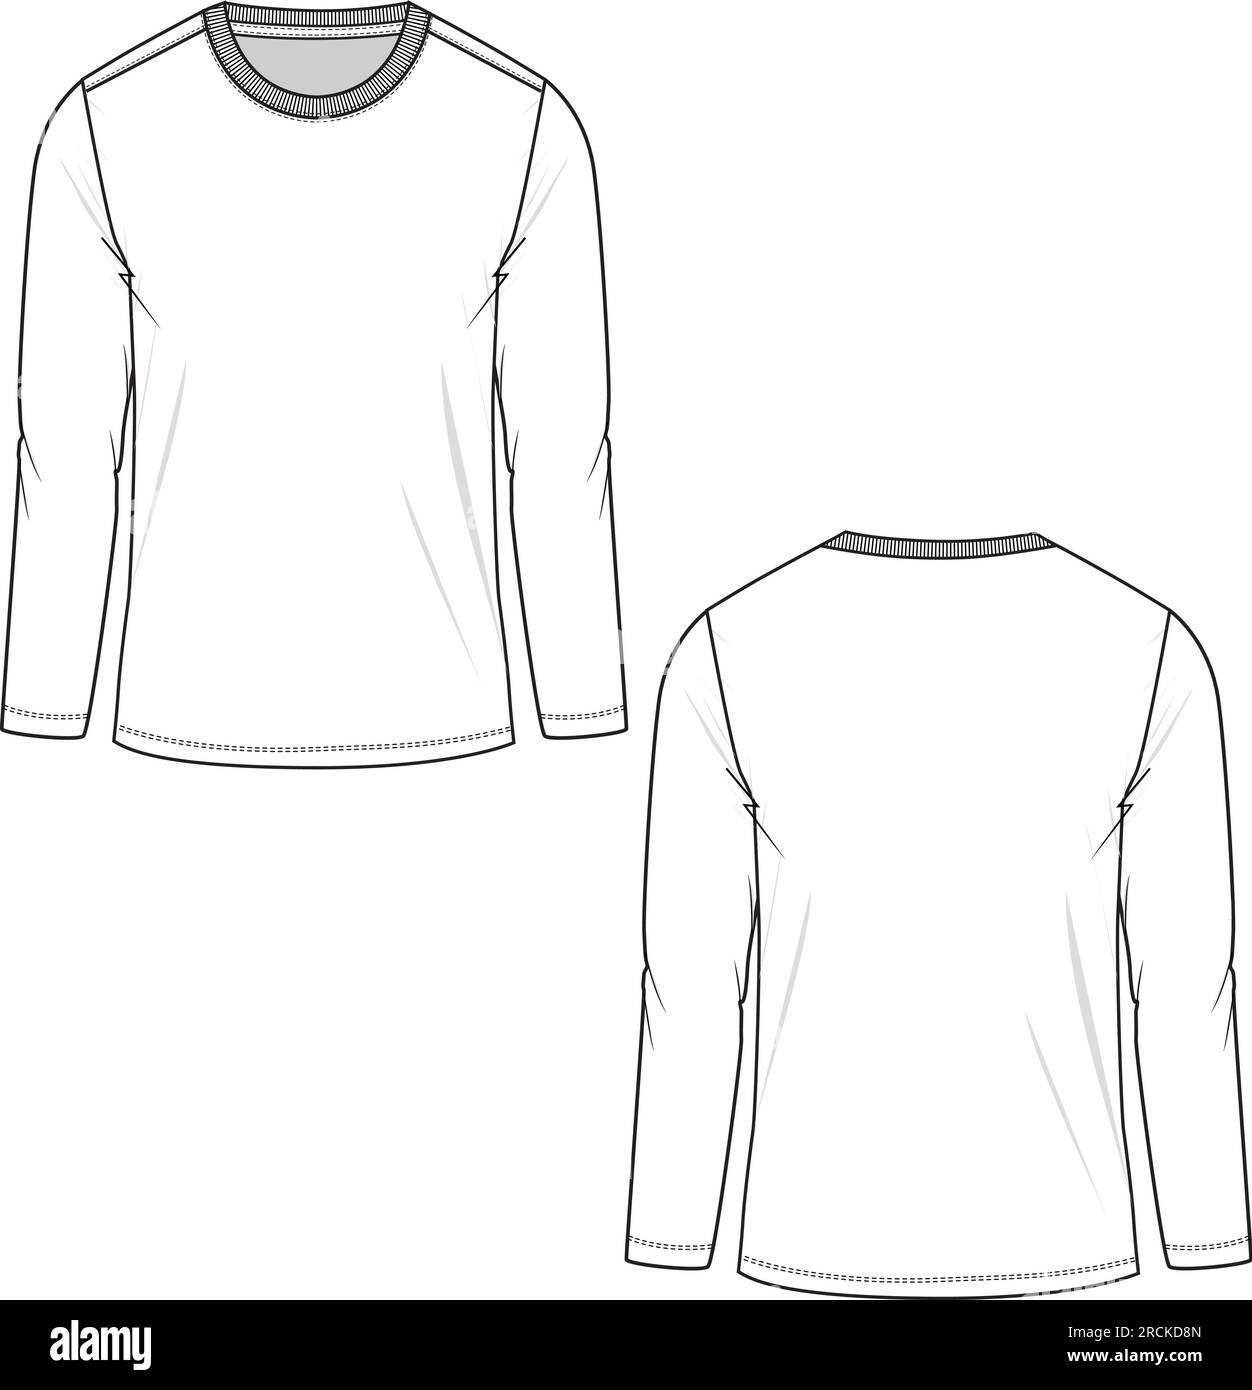 Illustrator Flat Sketch Download V11 Roll Sleeve Camp Shirt with Western  Shoulder Yoke - Designers Nexus